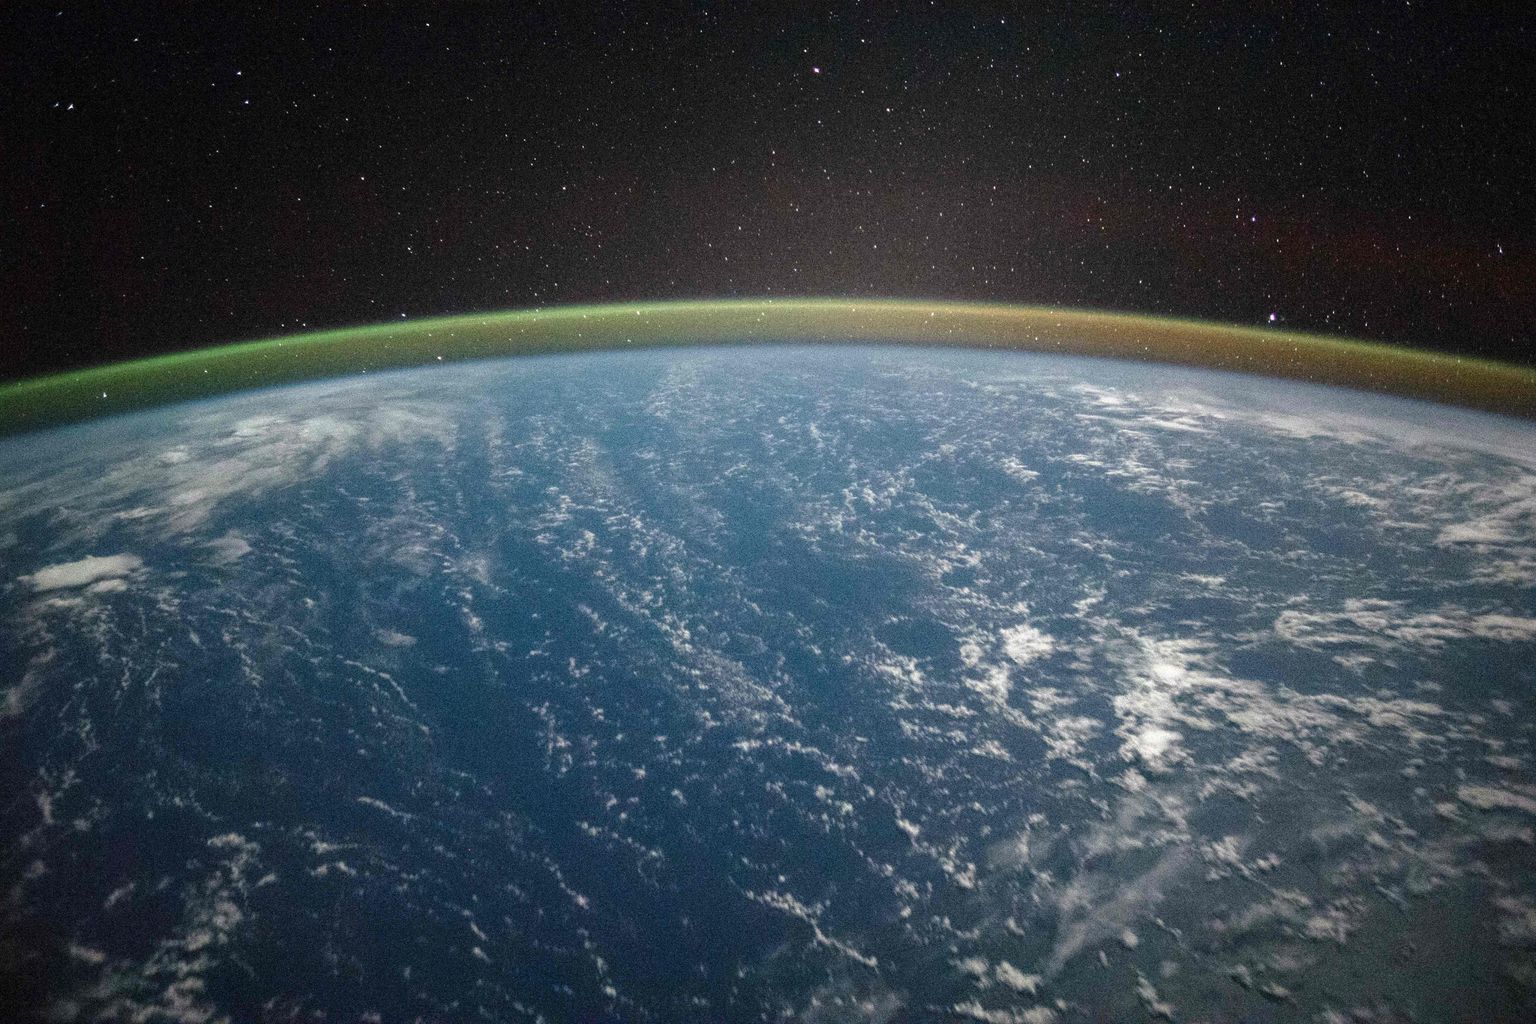 Rahvusvahelisest kosmosejaamast (ISS) 23. septembril 2021 tehtud foto Maast. Näha on Vaikset ookeani ja atmosfäärihelendust